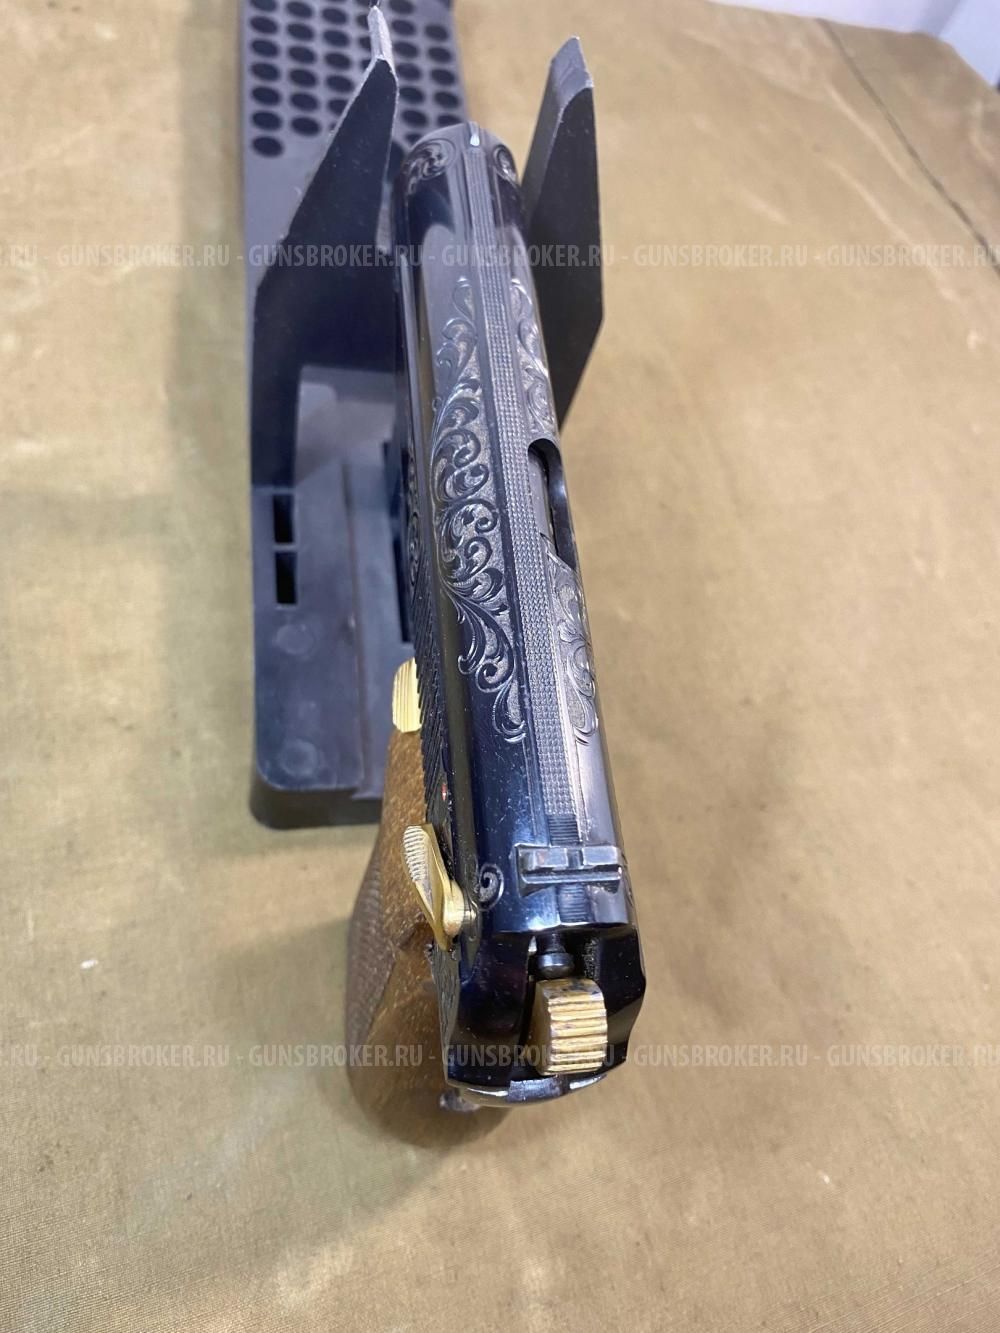 Пневматический пистолет МР-654к 1998 года выпуска украшен резьбой и позолоченным ЗИПом